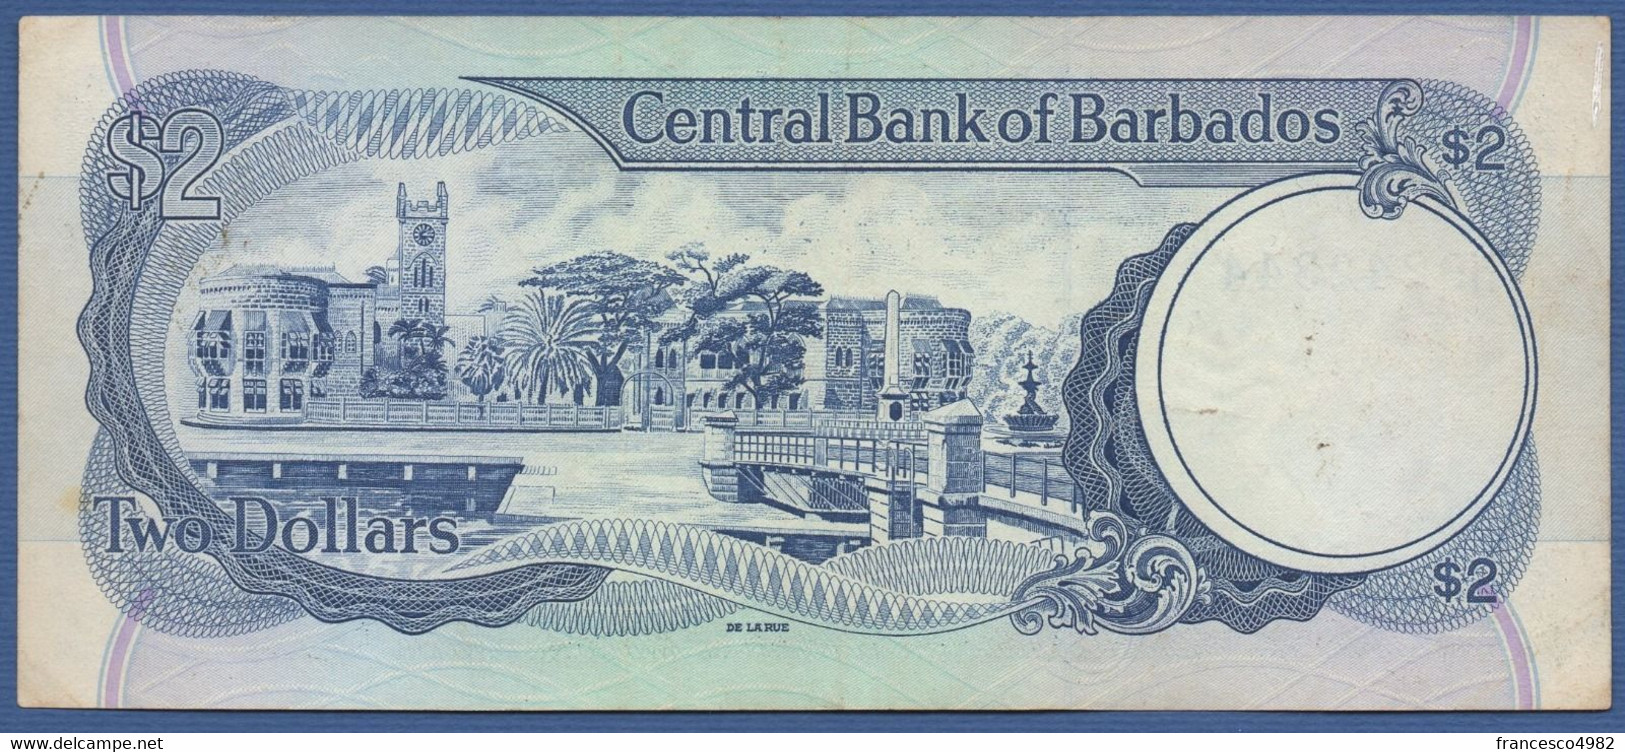 BARBADOS - P.36a –  2 DOLLARS ND (1986) - CIRCULATED - Printer  De La Rue, London - Serie H9242344 - Barbados (Barbuda)